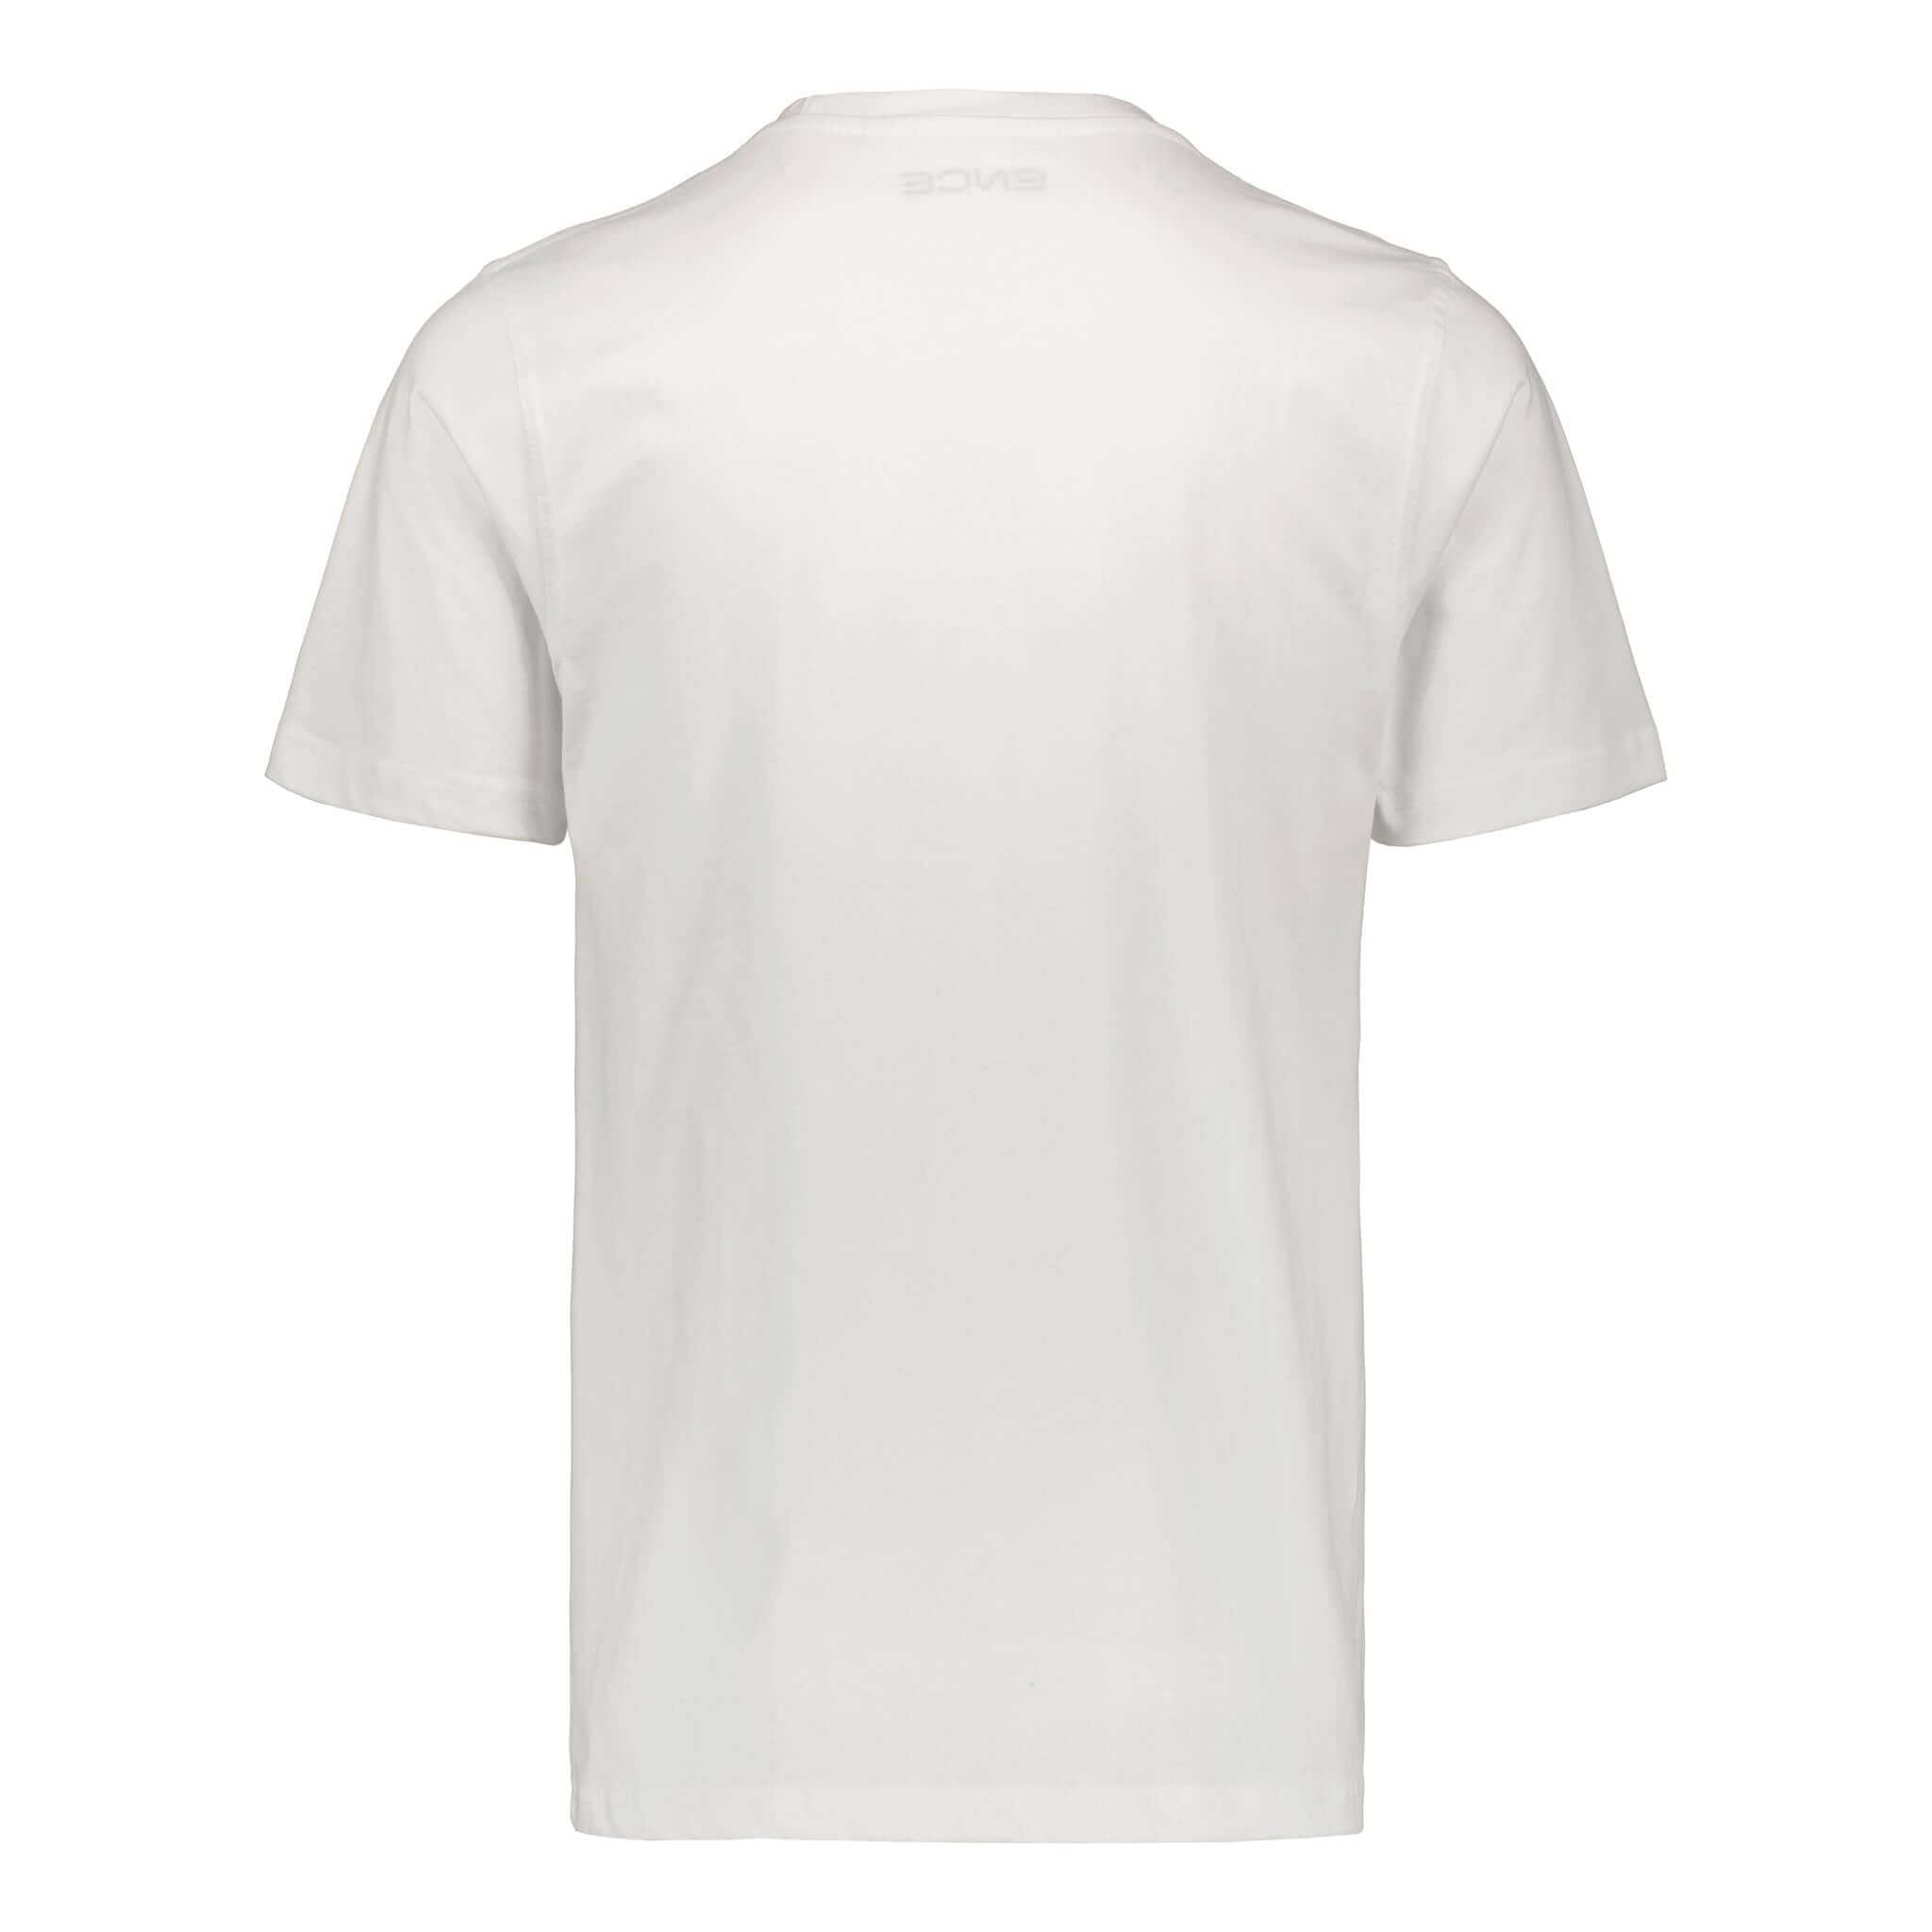 ENCE Square White T-Shirt | ENCE Shop